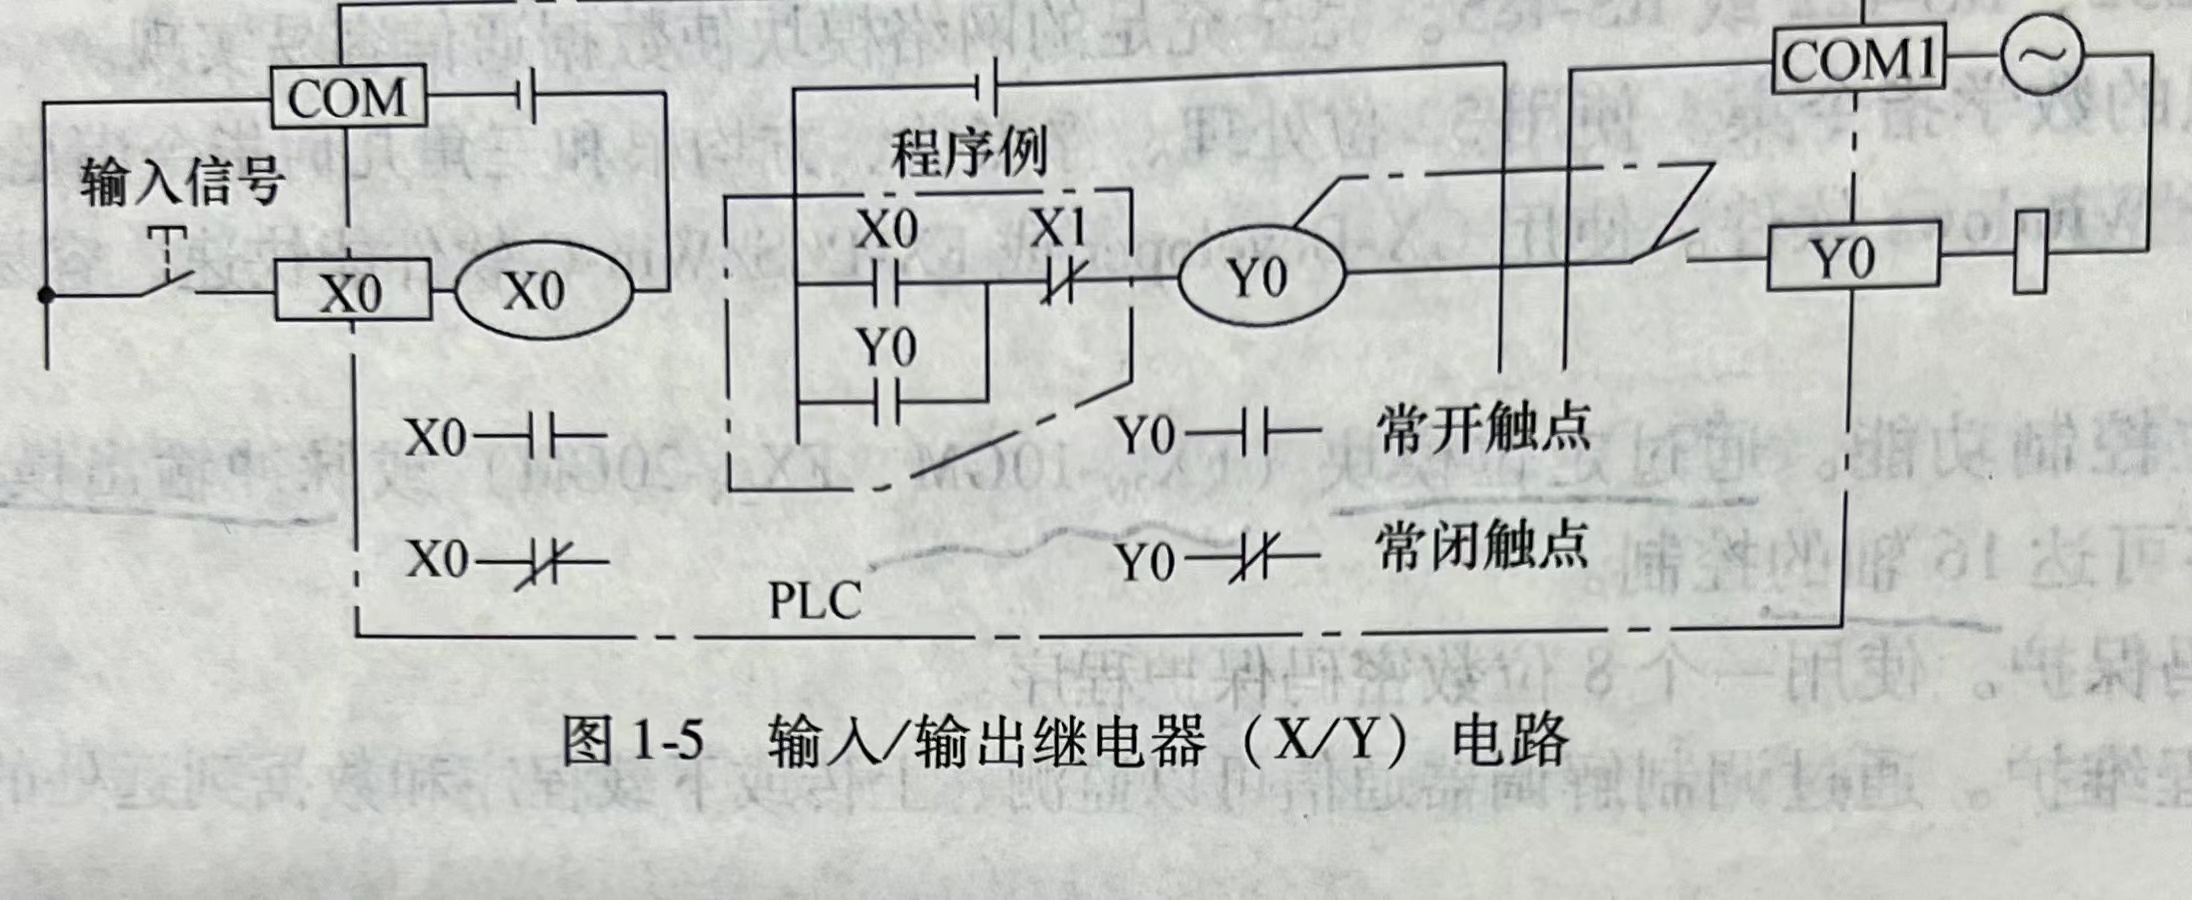 三菱FX系列PLC的編程器件——輸入/輸出繼電器(X/Y)